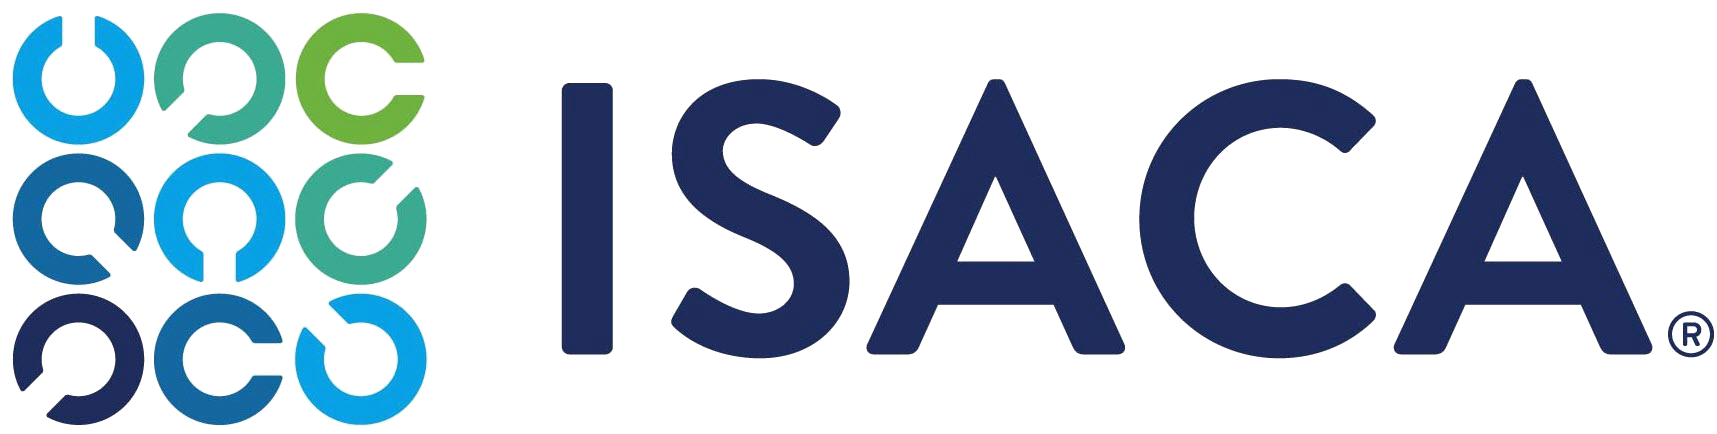 ISACA_logo